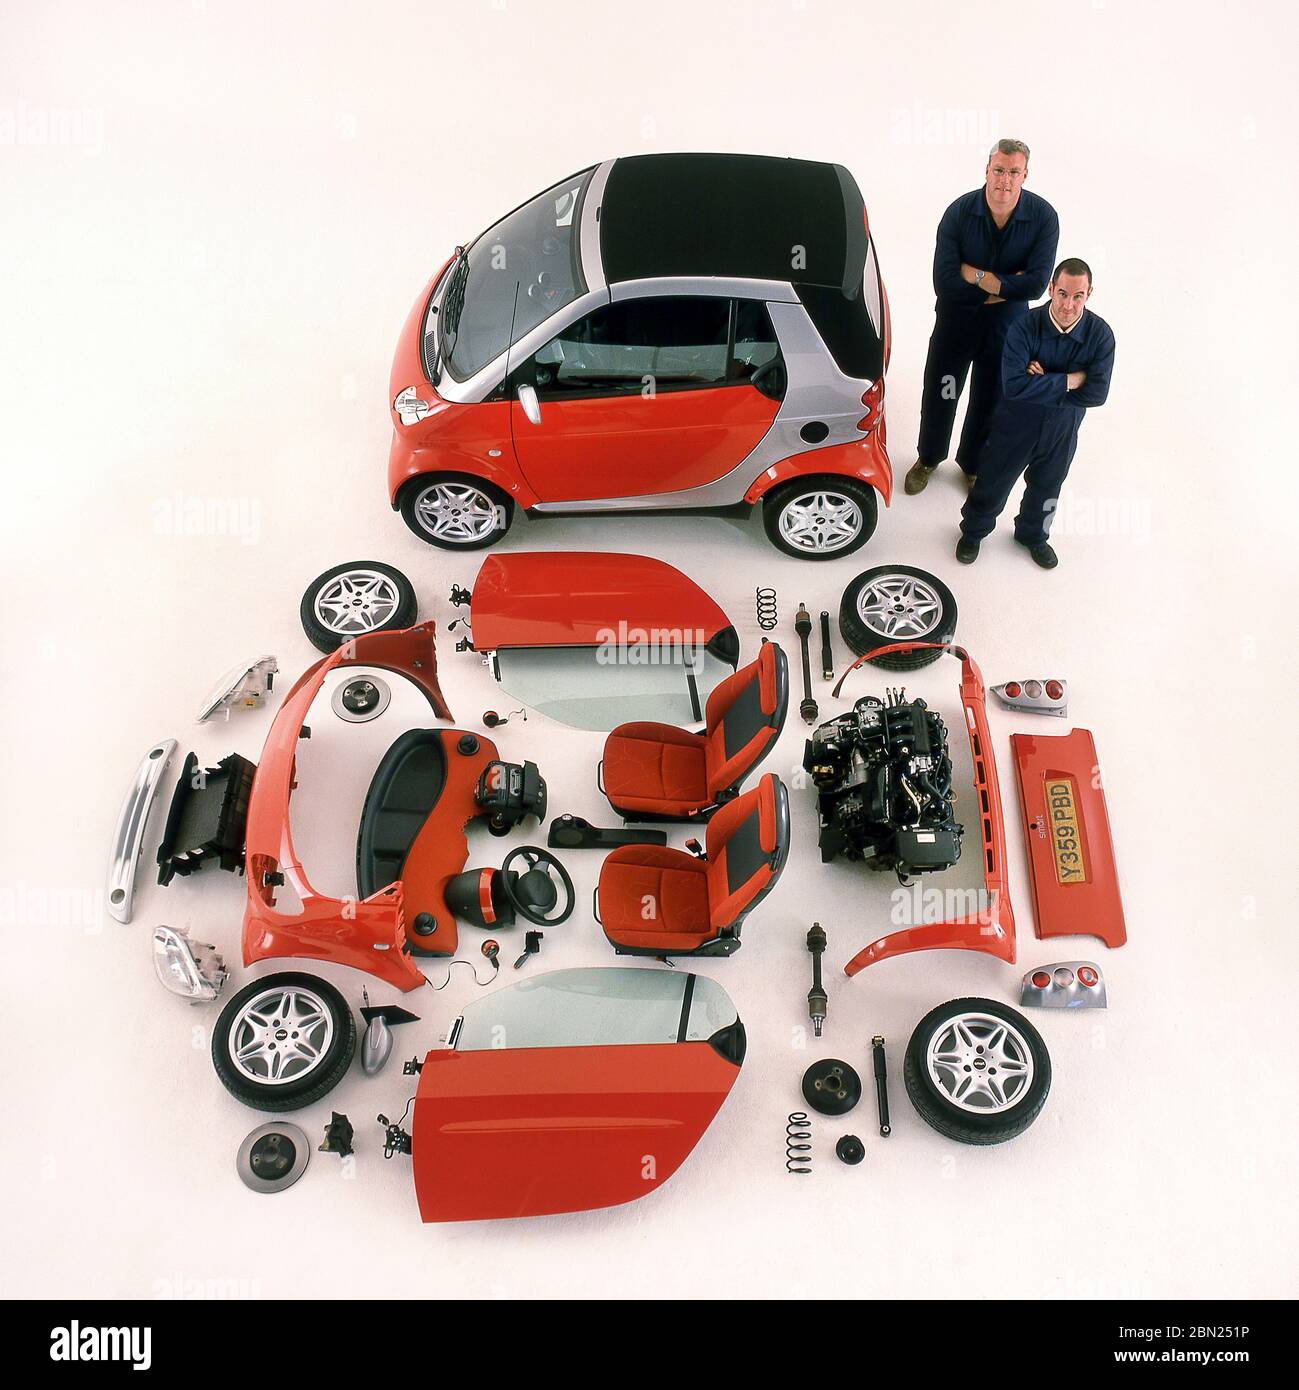 2001 Smart zwei Autos und Komponenten, die das Fahrzeug auf dem Display ausgelegt. Stockfoto